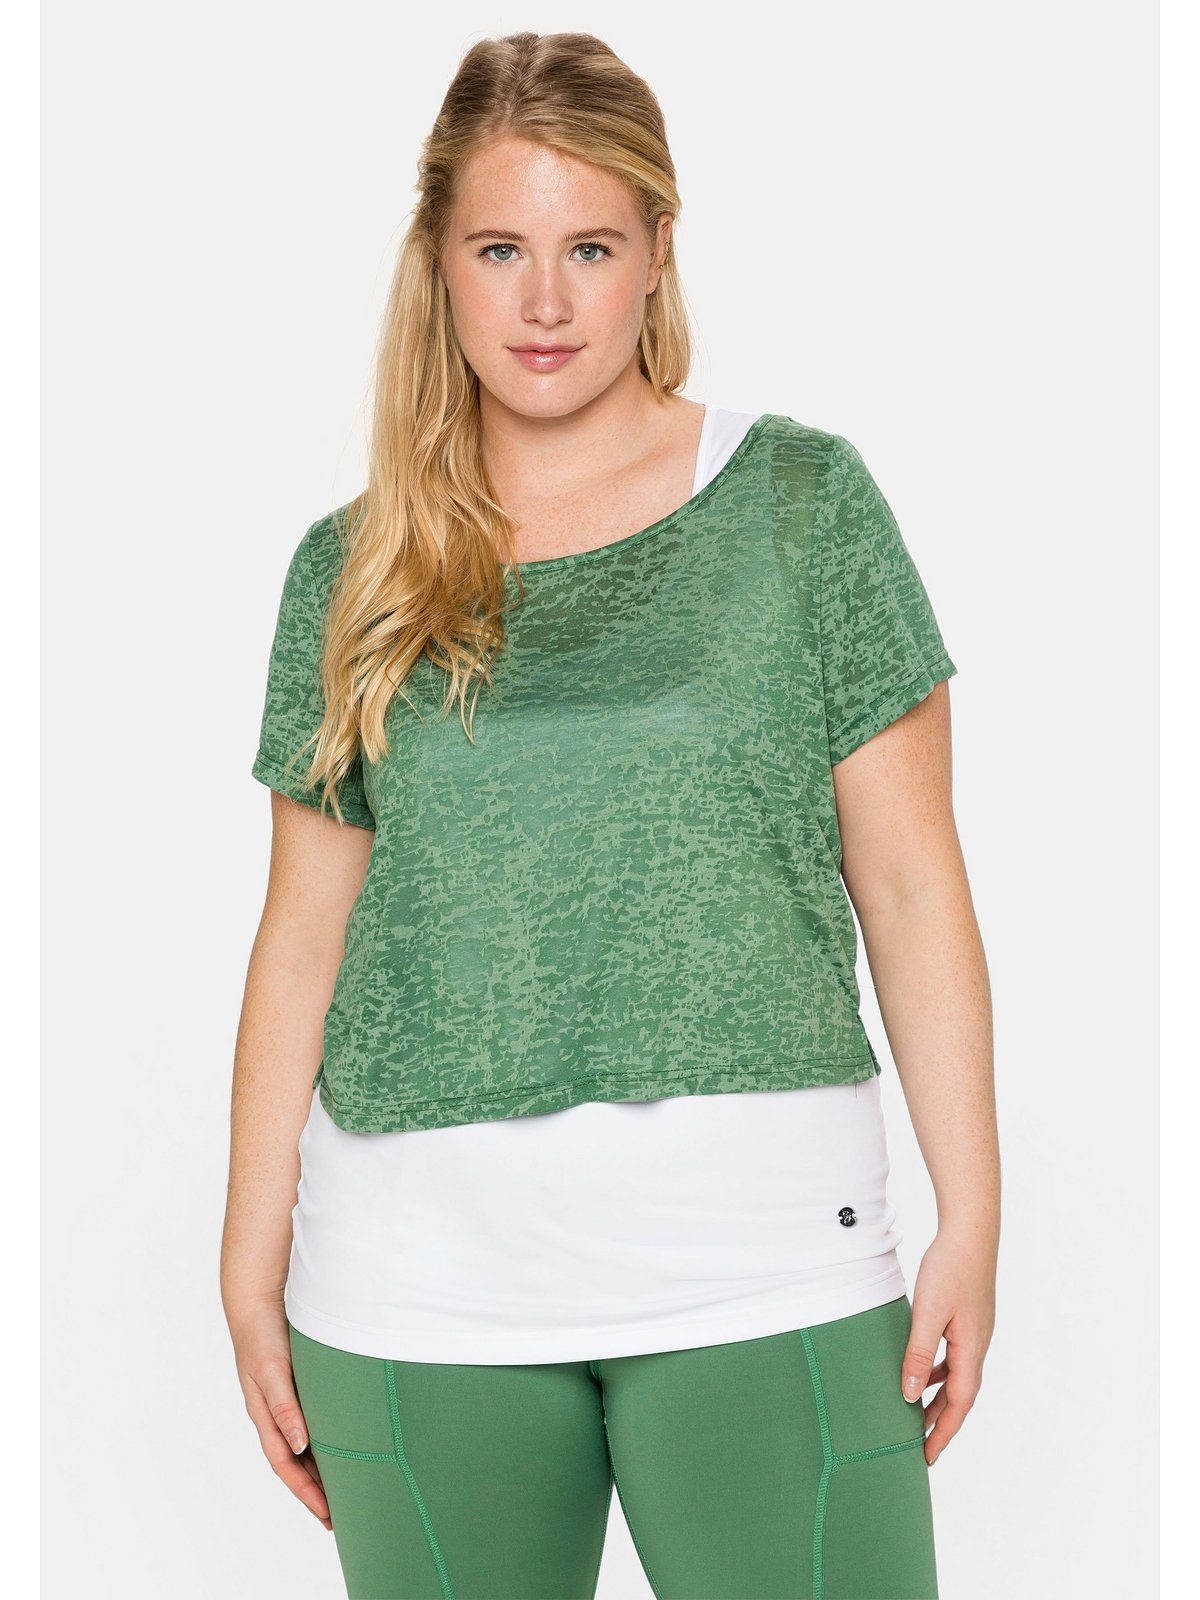 Größe | Damen Große OTTO online kaufen Funktionsshirts